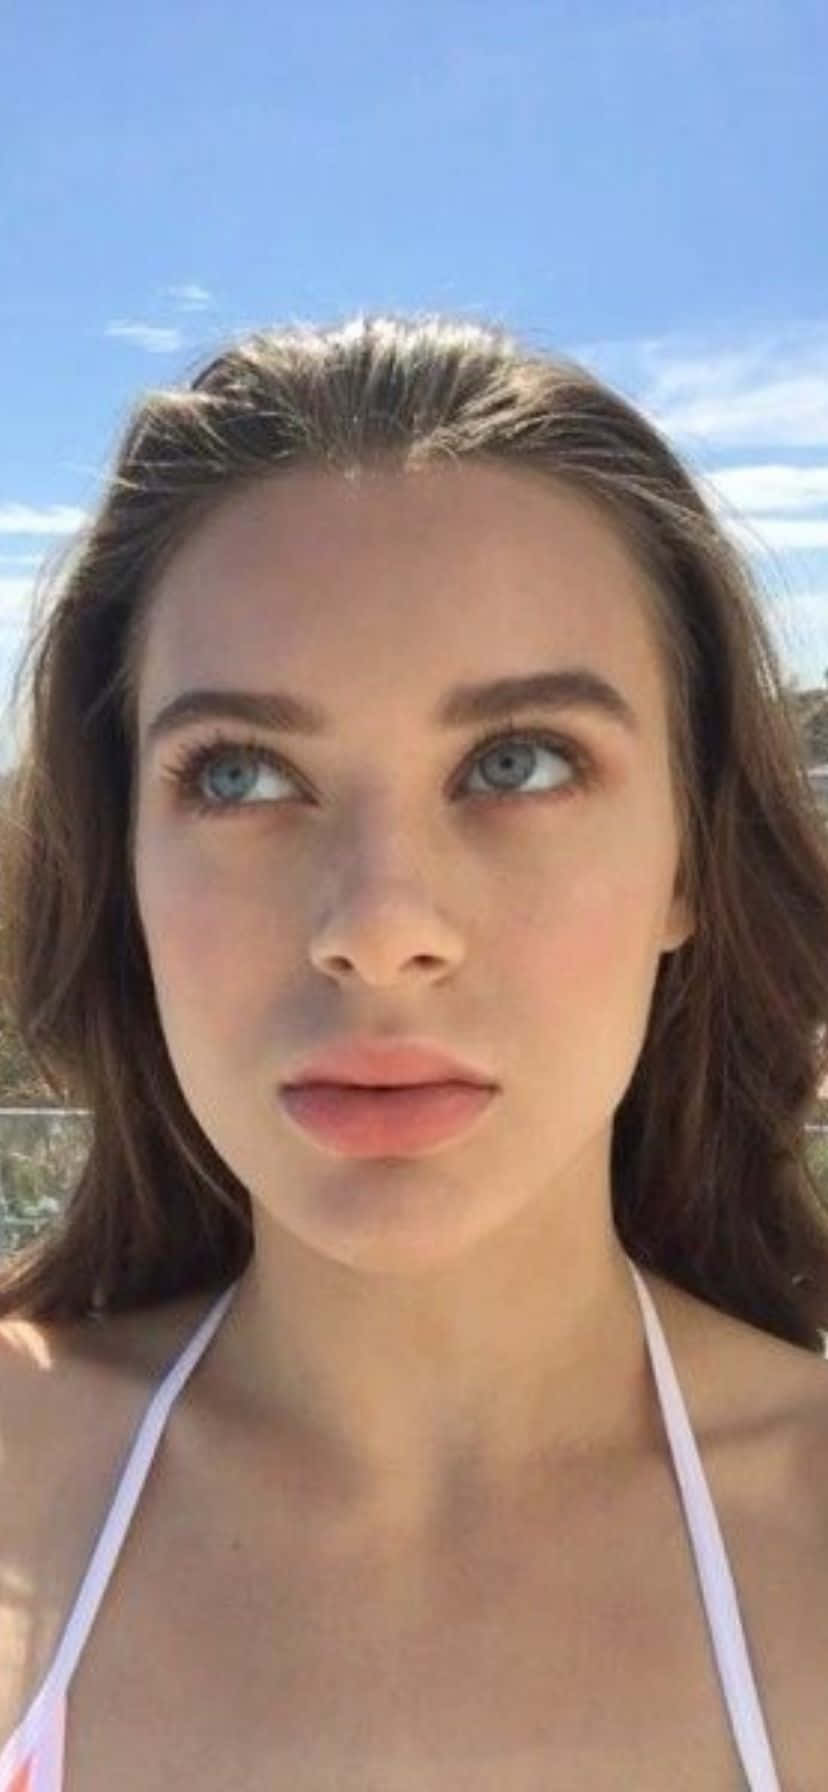 Blue Eyed Beauty Selfie Wallpaper